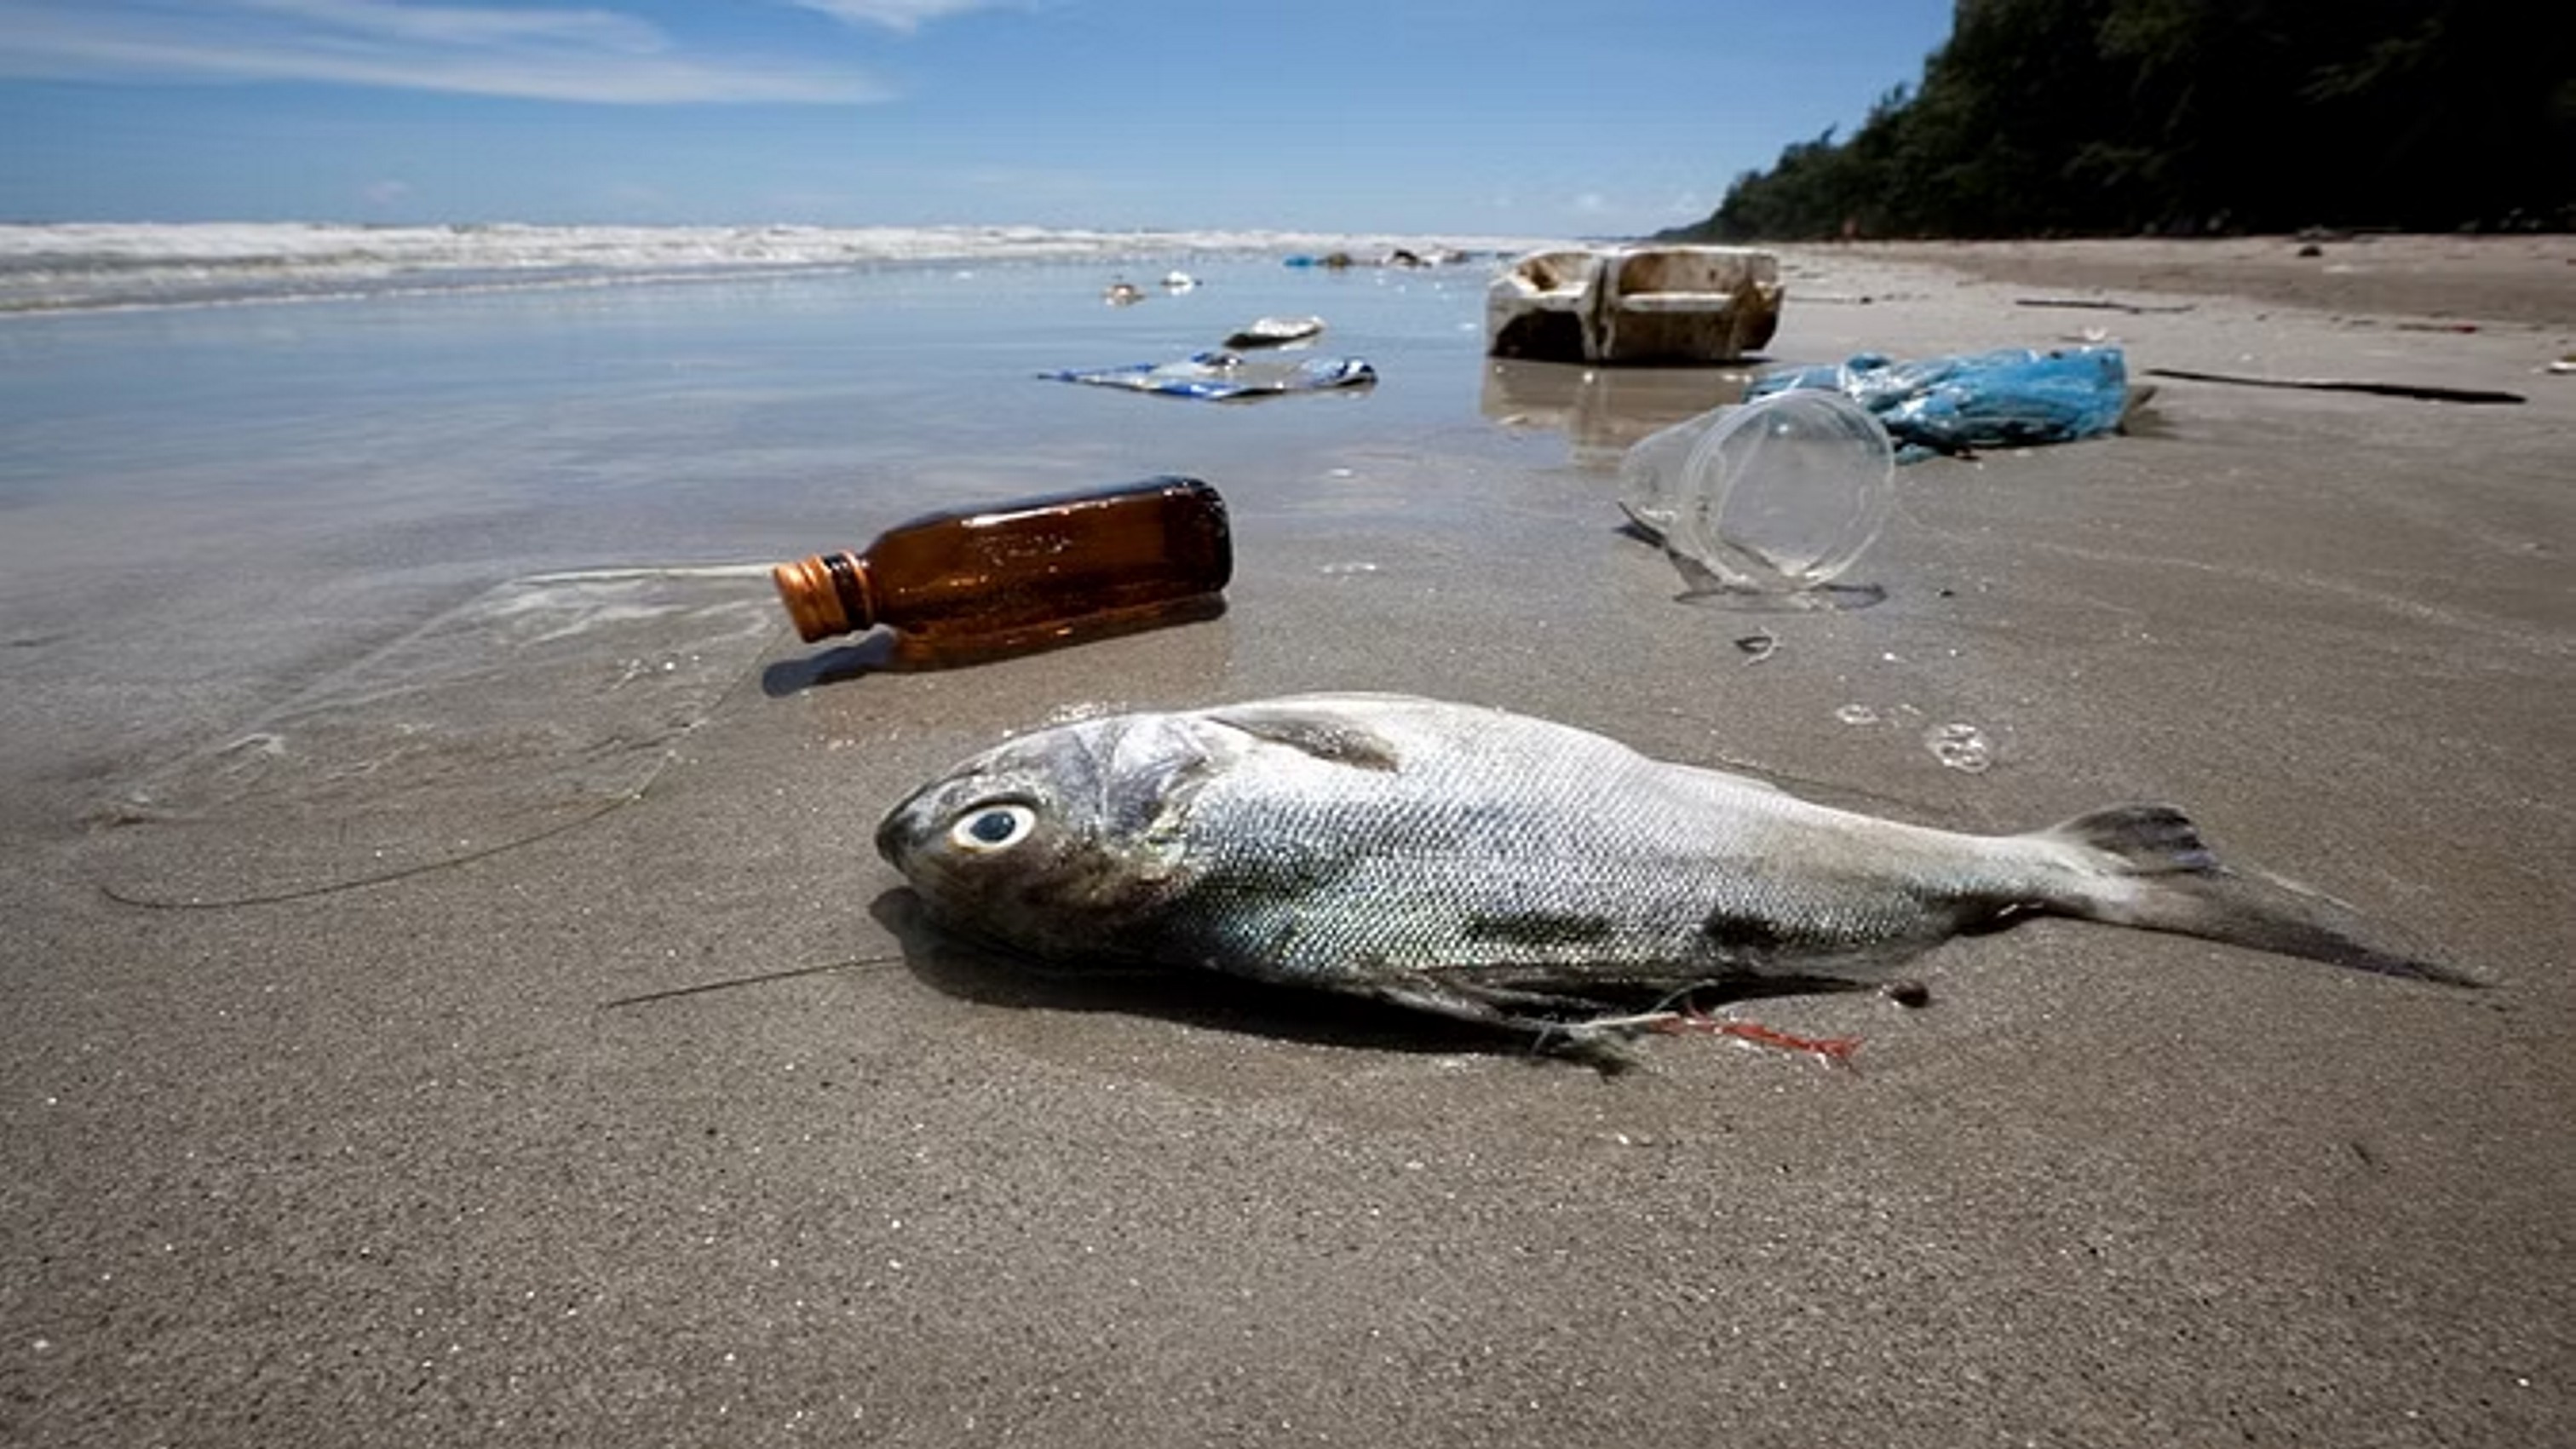 जैवविविधता के लिए संकट बना प्रदूषण, समुद्र के तल में जमा है 1.10 टन करोड़ प्लास्टिक